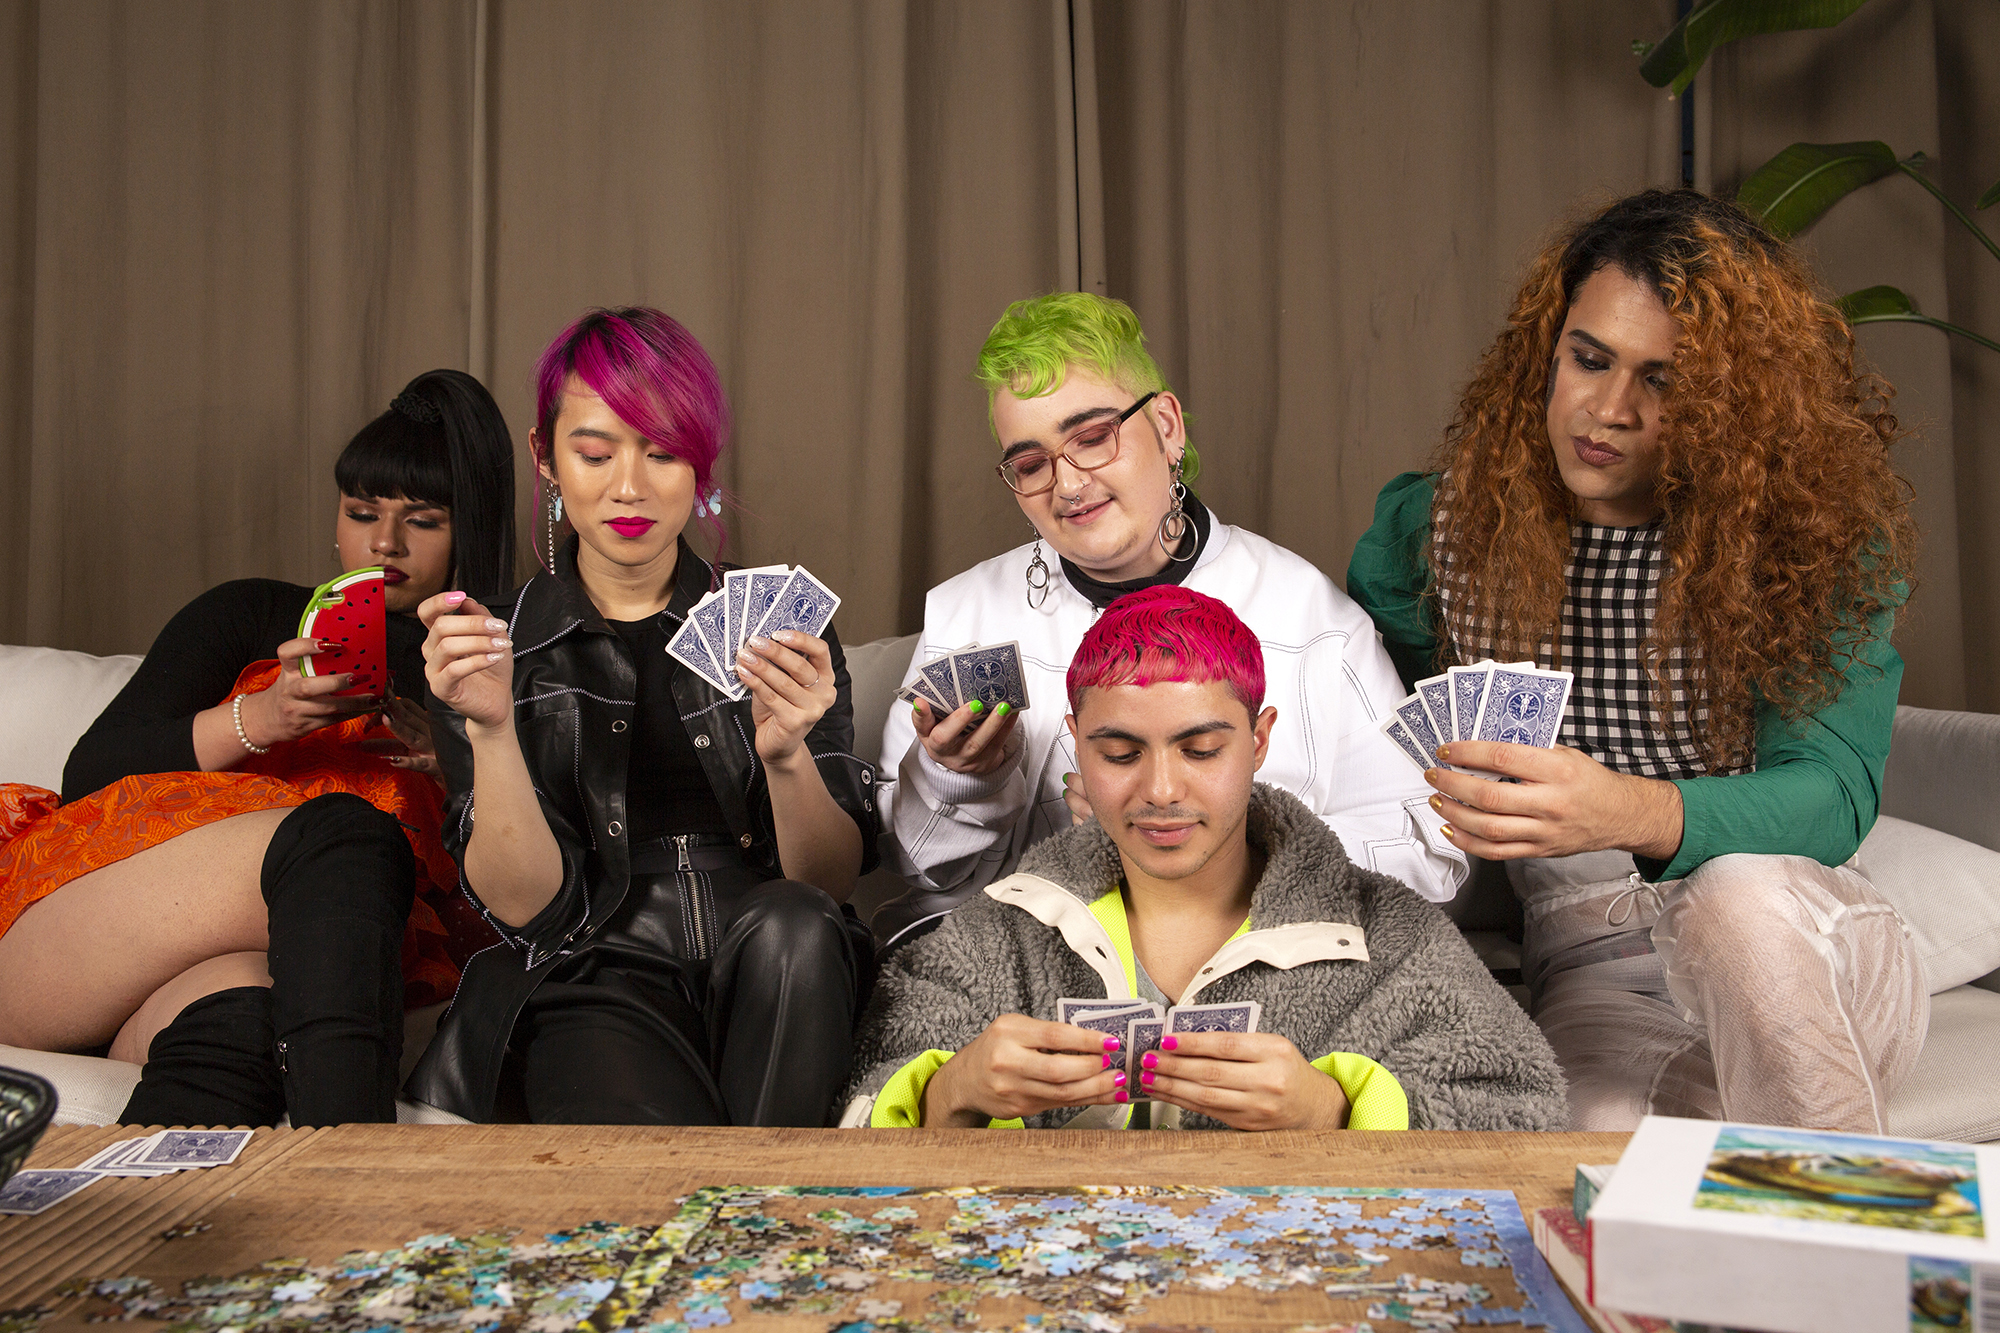 Un grupo de adolescentes jugando un juego de cartas.